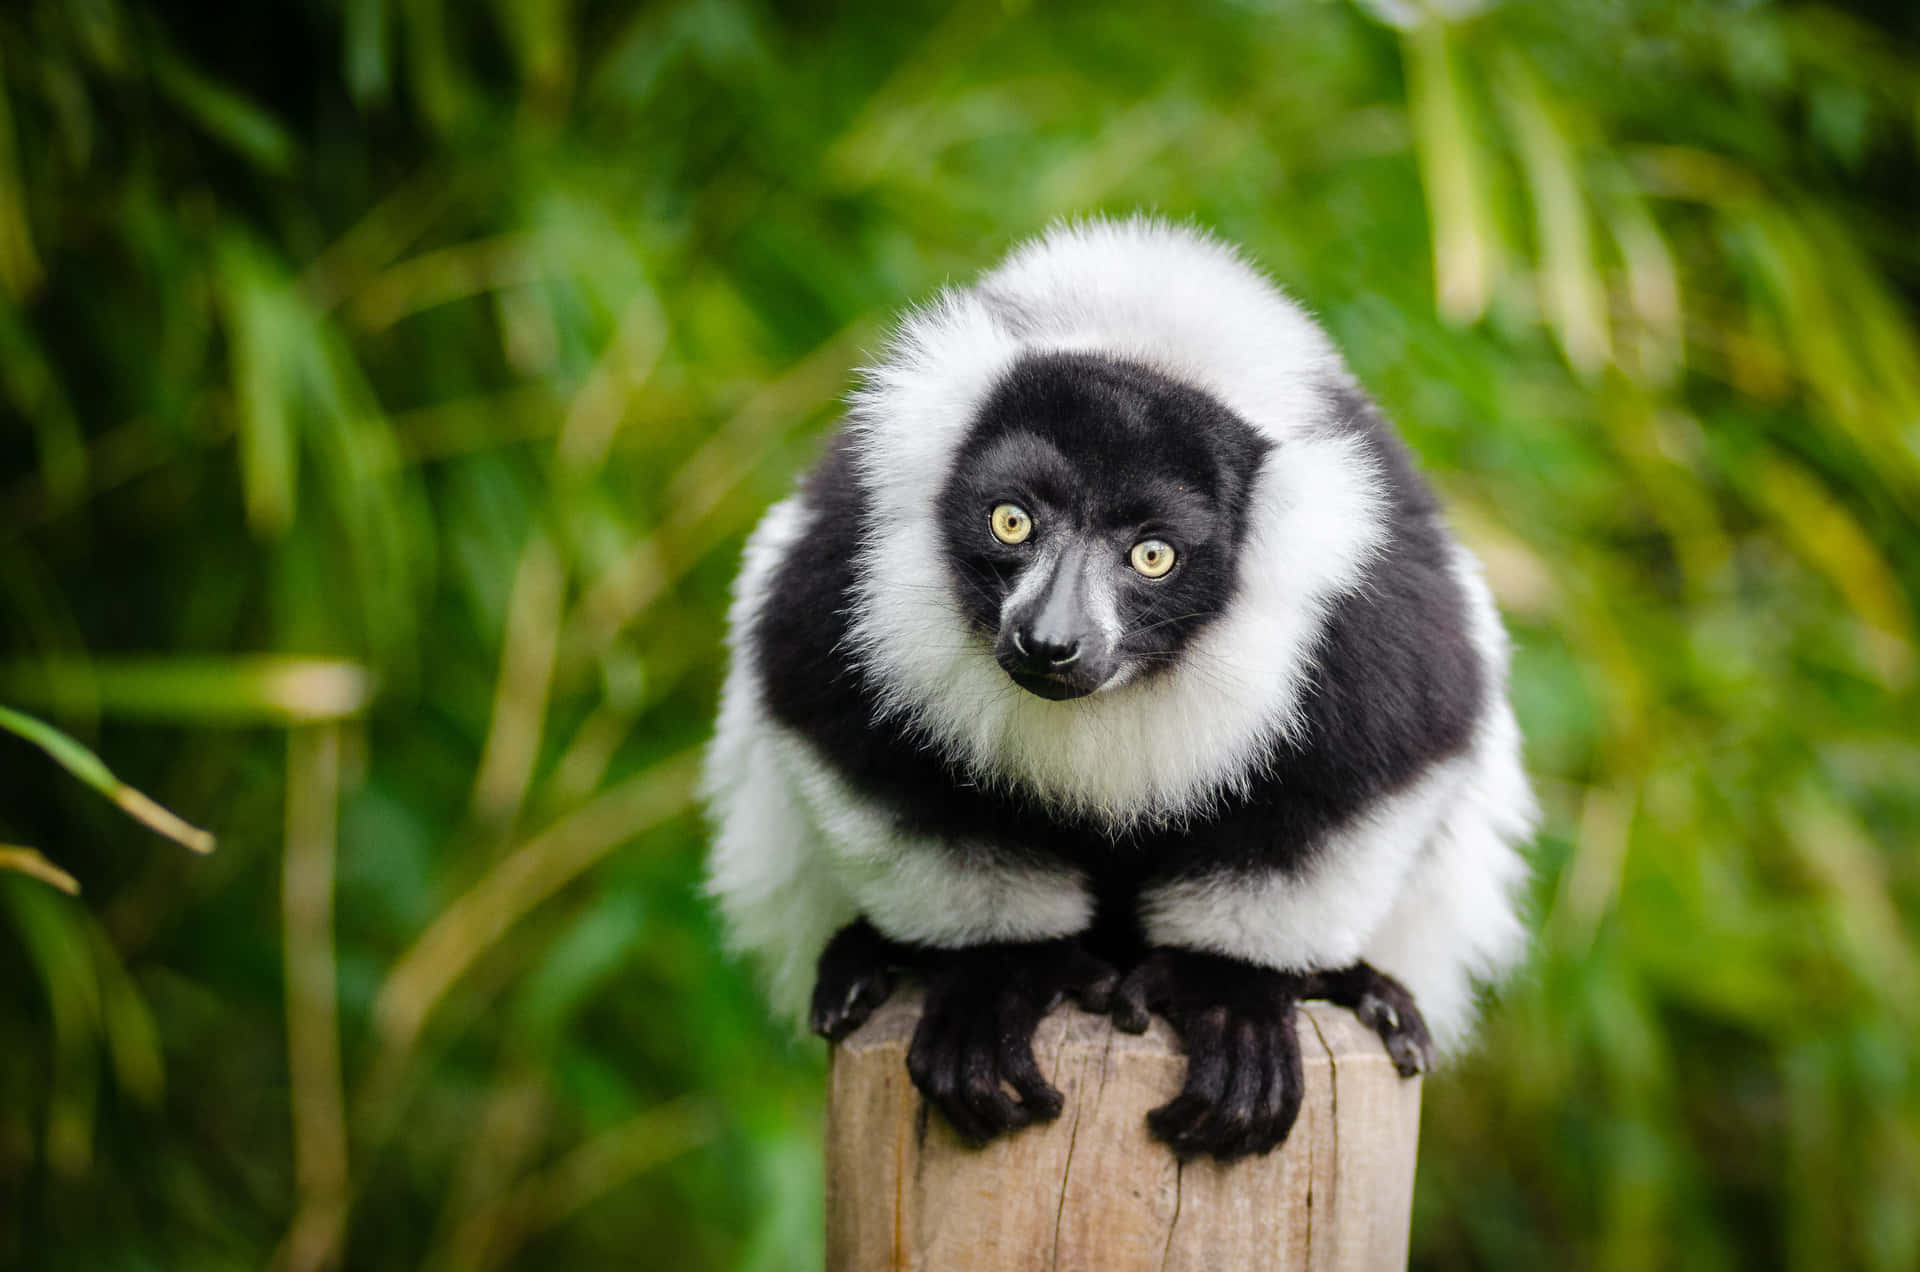 Blackand White Ruffed Lemurin Nature.jpg Wallpaper